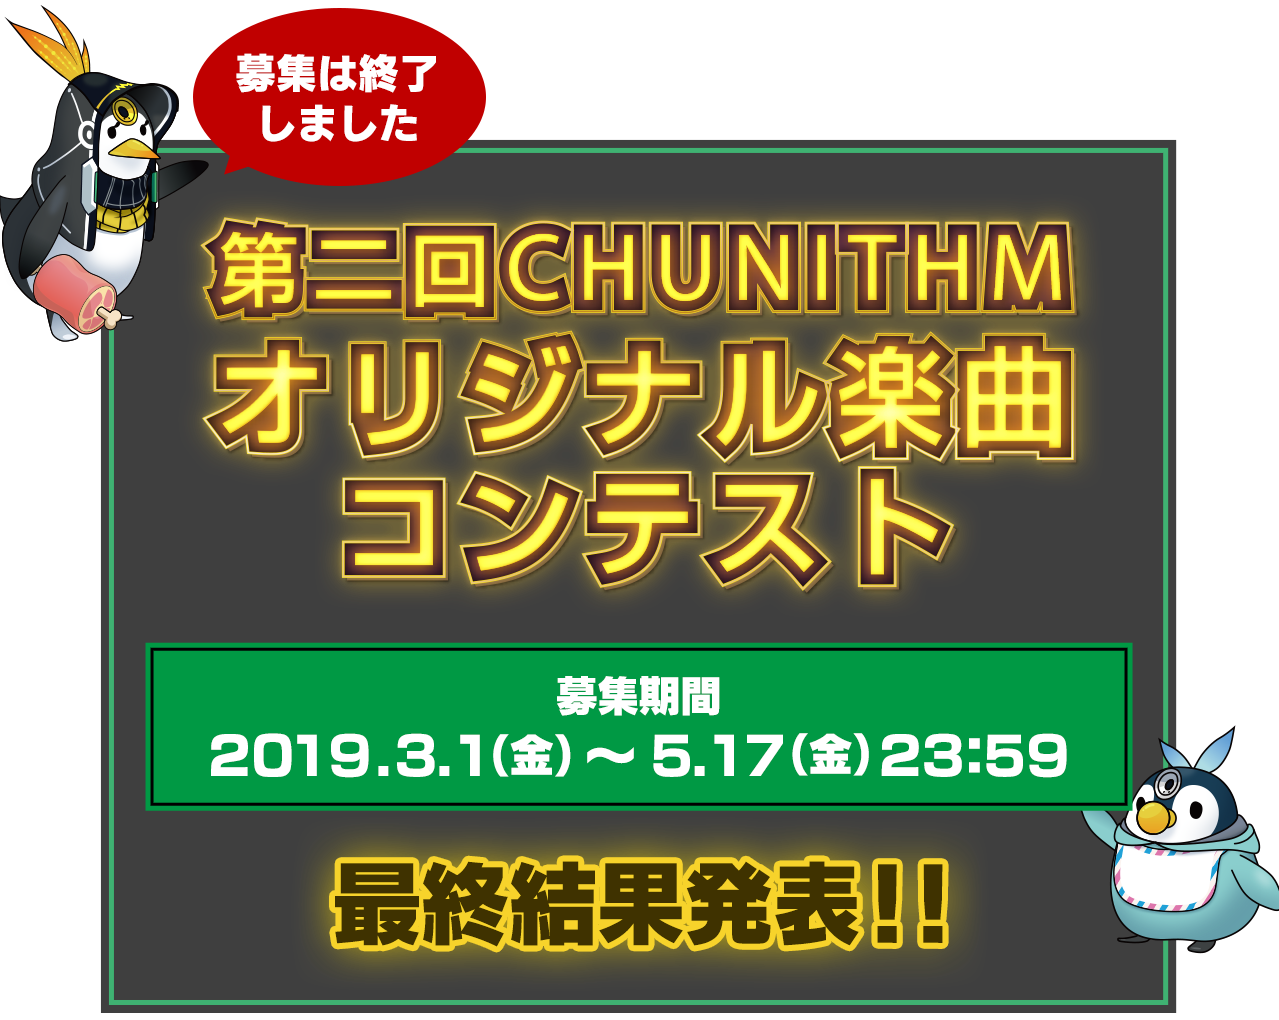 キャラクター リヒトシュッツェ ストーリー 第二回 Chunithm チュウニズム オリジナル楽曲コンテスト セガ